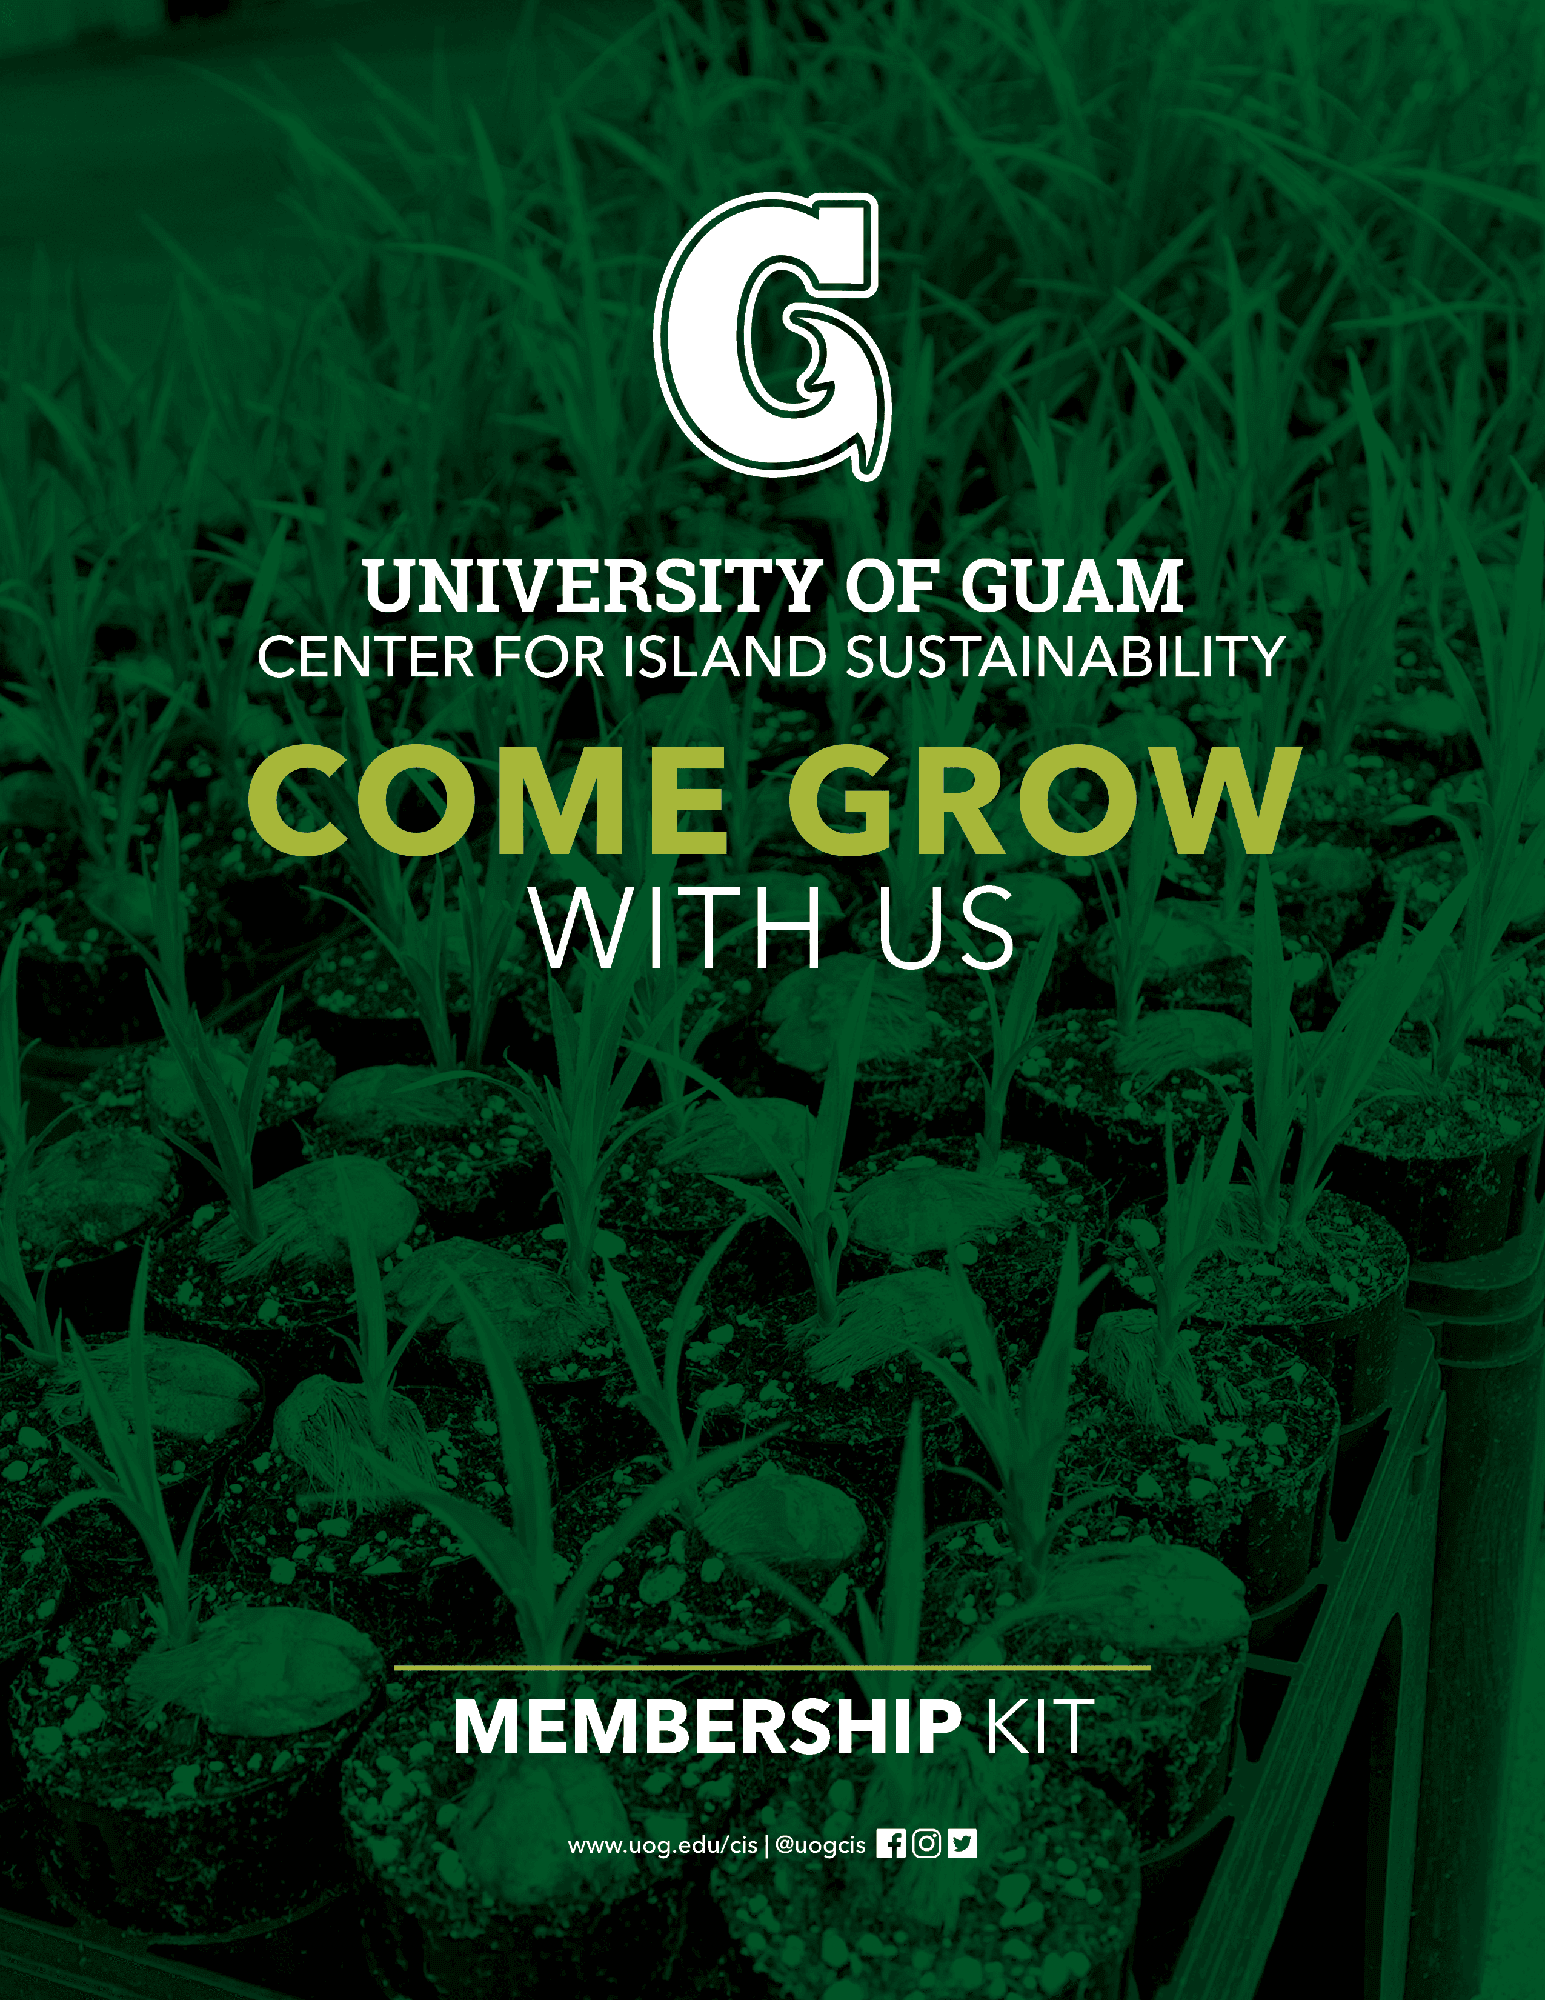 Guam Green Growth membership kit